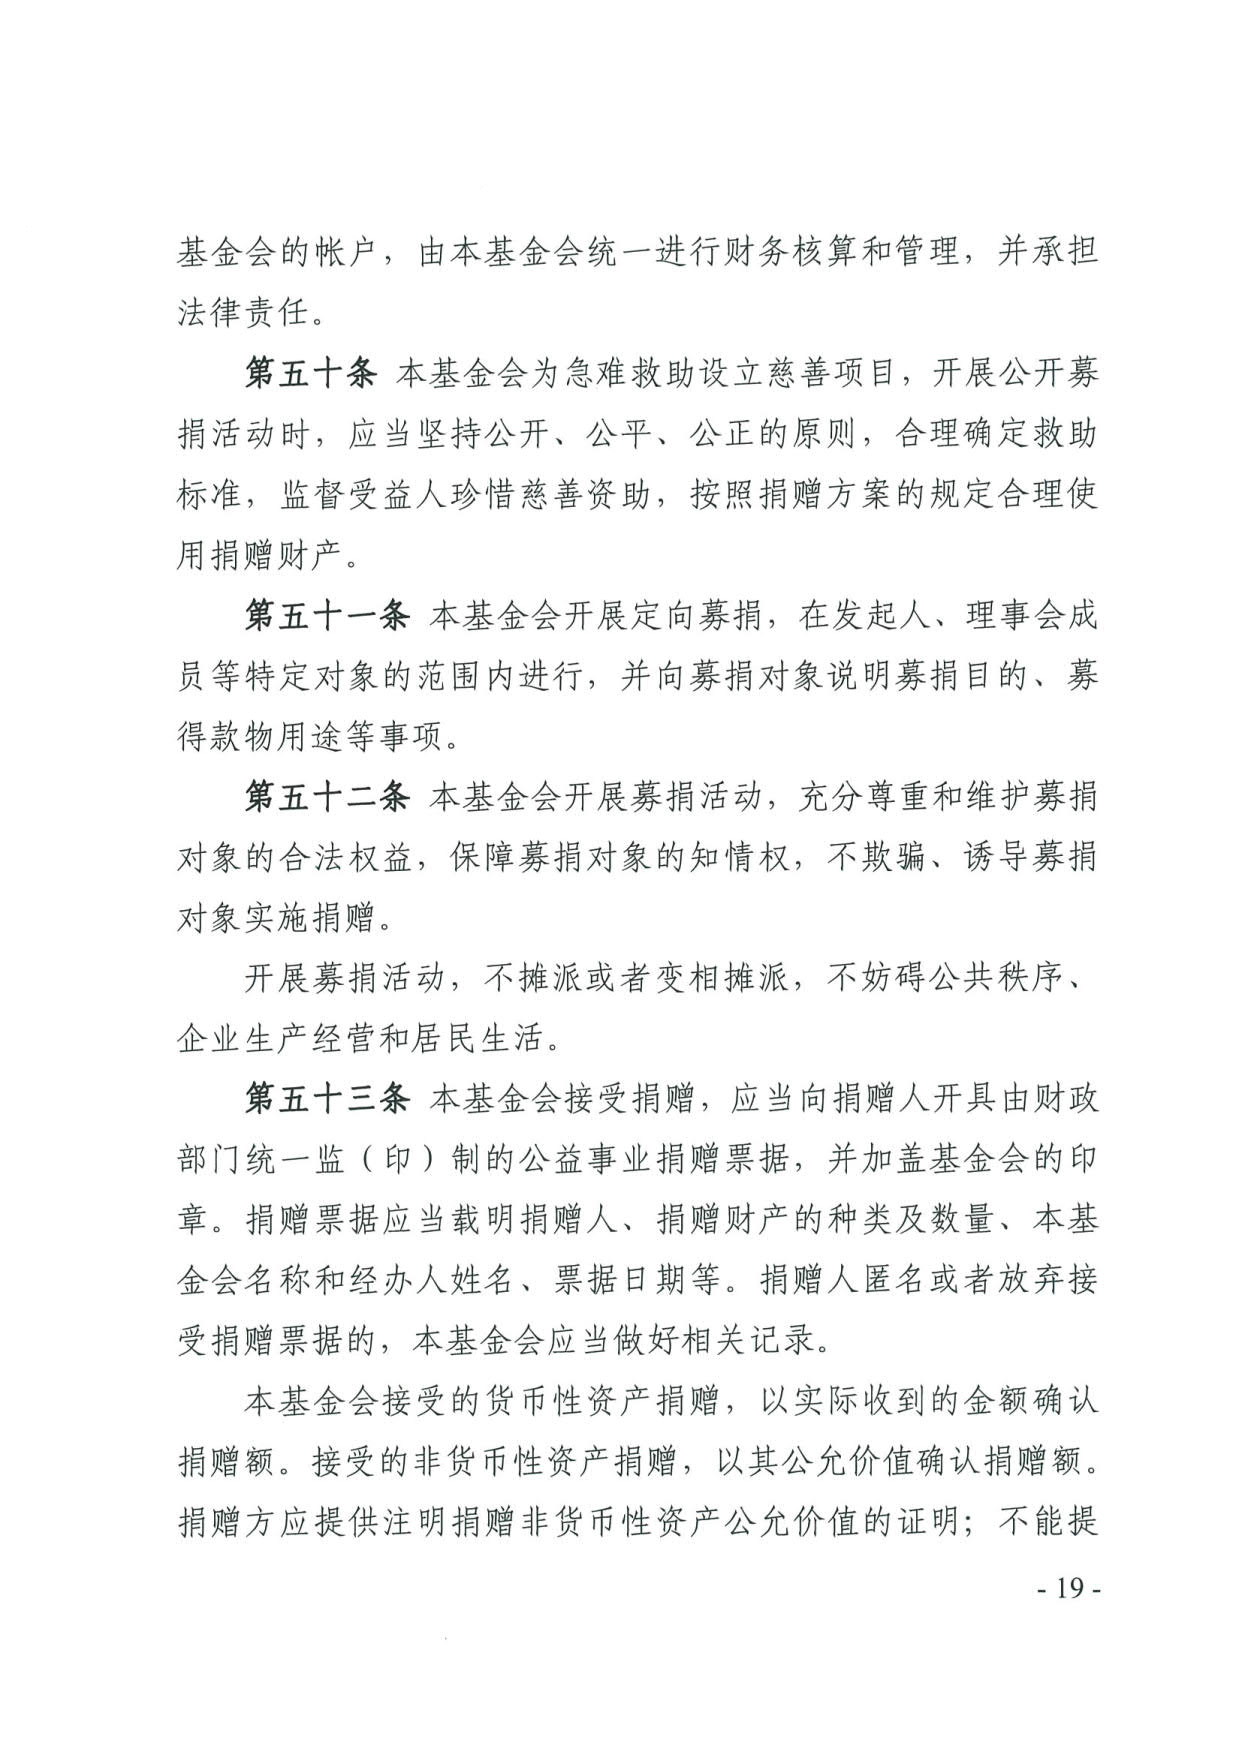 广东省民政厅关于印发《广东省基金会章程示范文本》的通知(4)_19.jpg